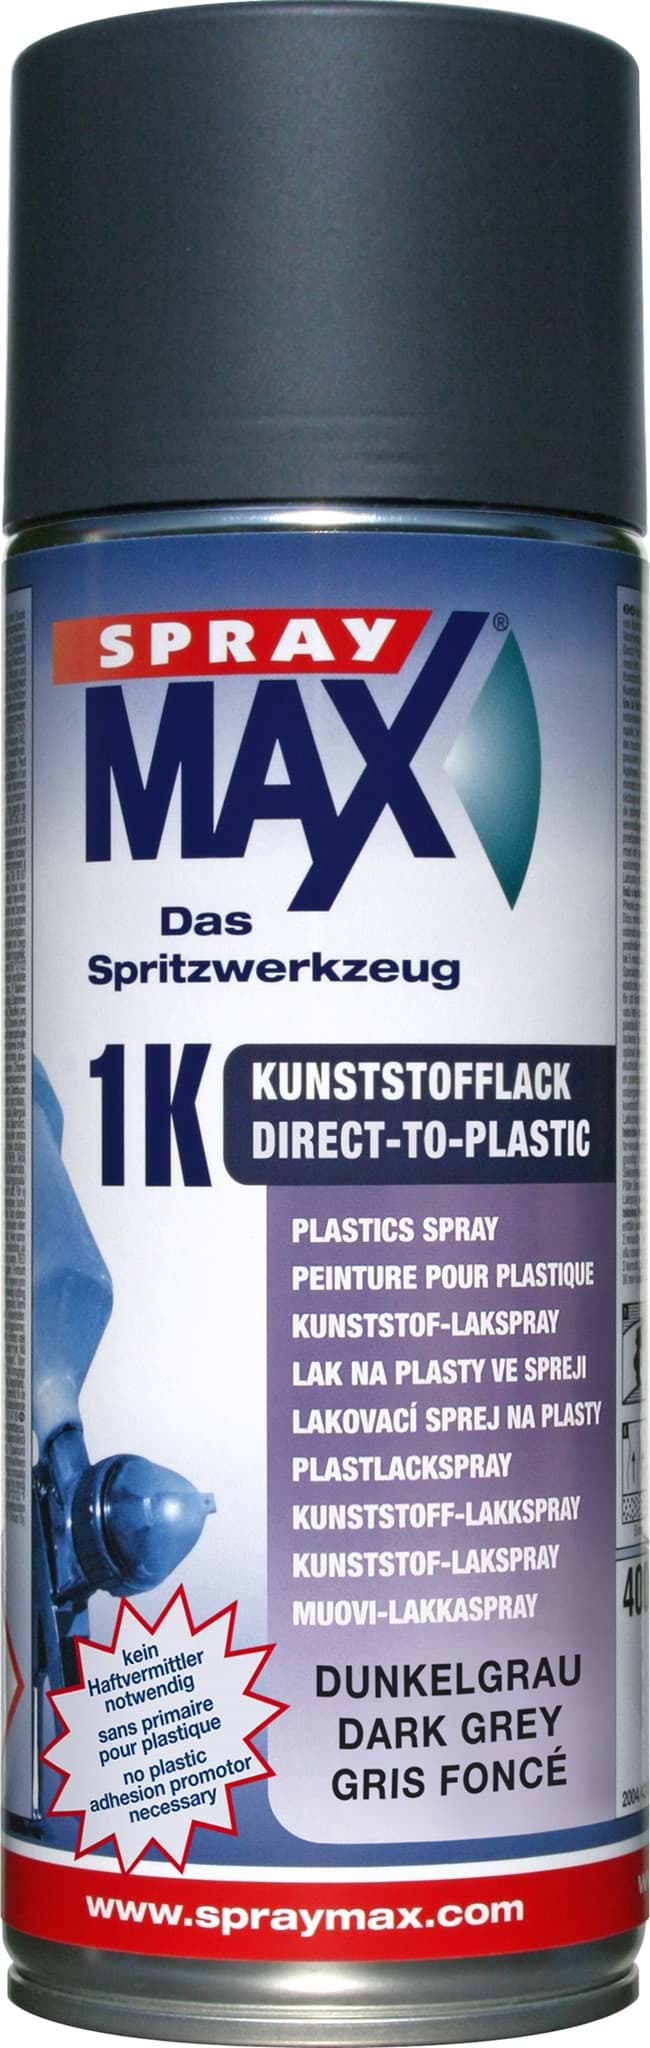 Afbeelding van SprayMax 1K DTP-Kunststofflack Dunkelgrau 400ml 680044